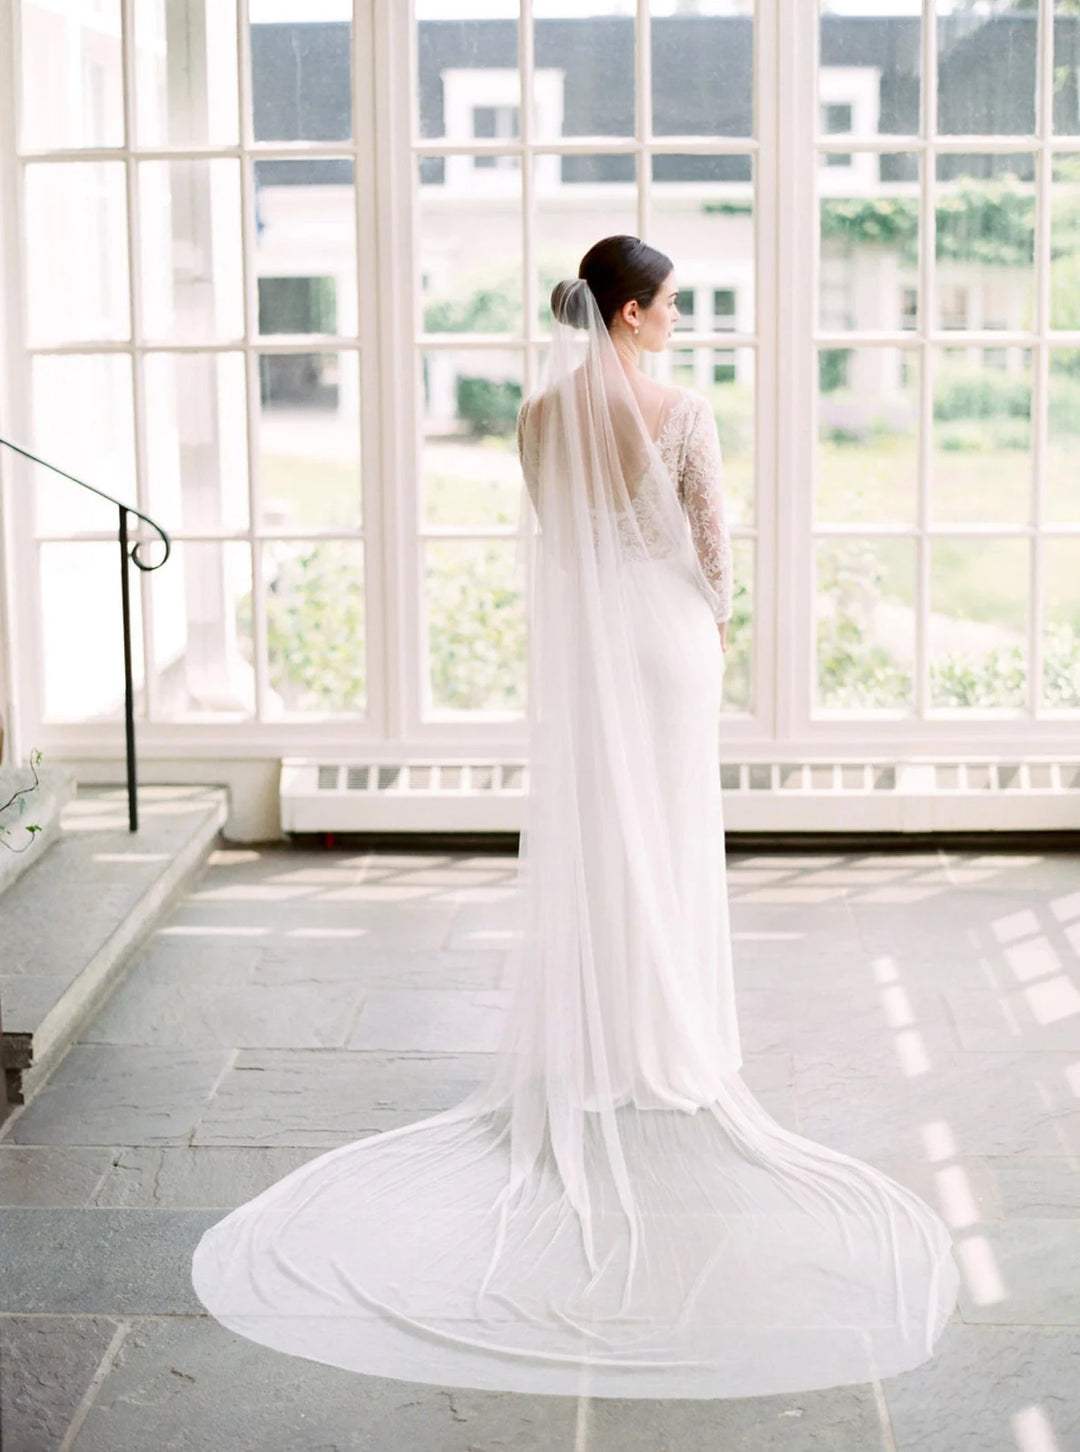 French silk wedding veil